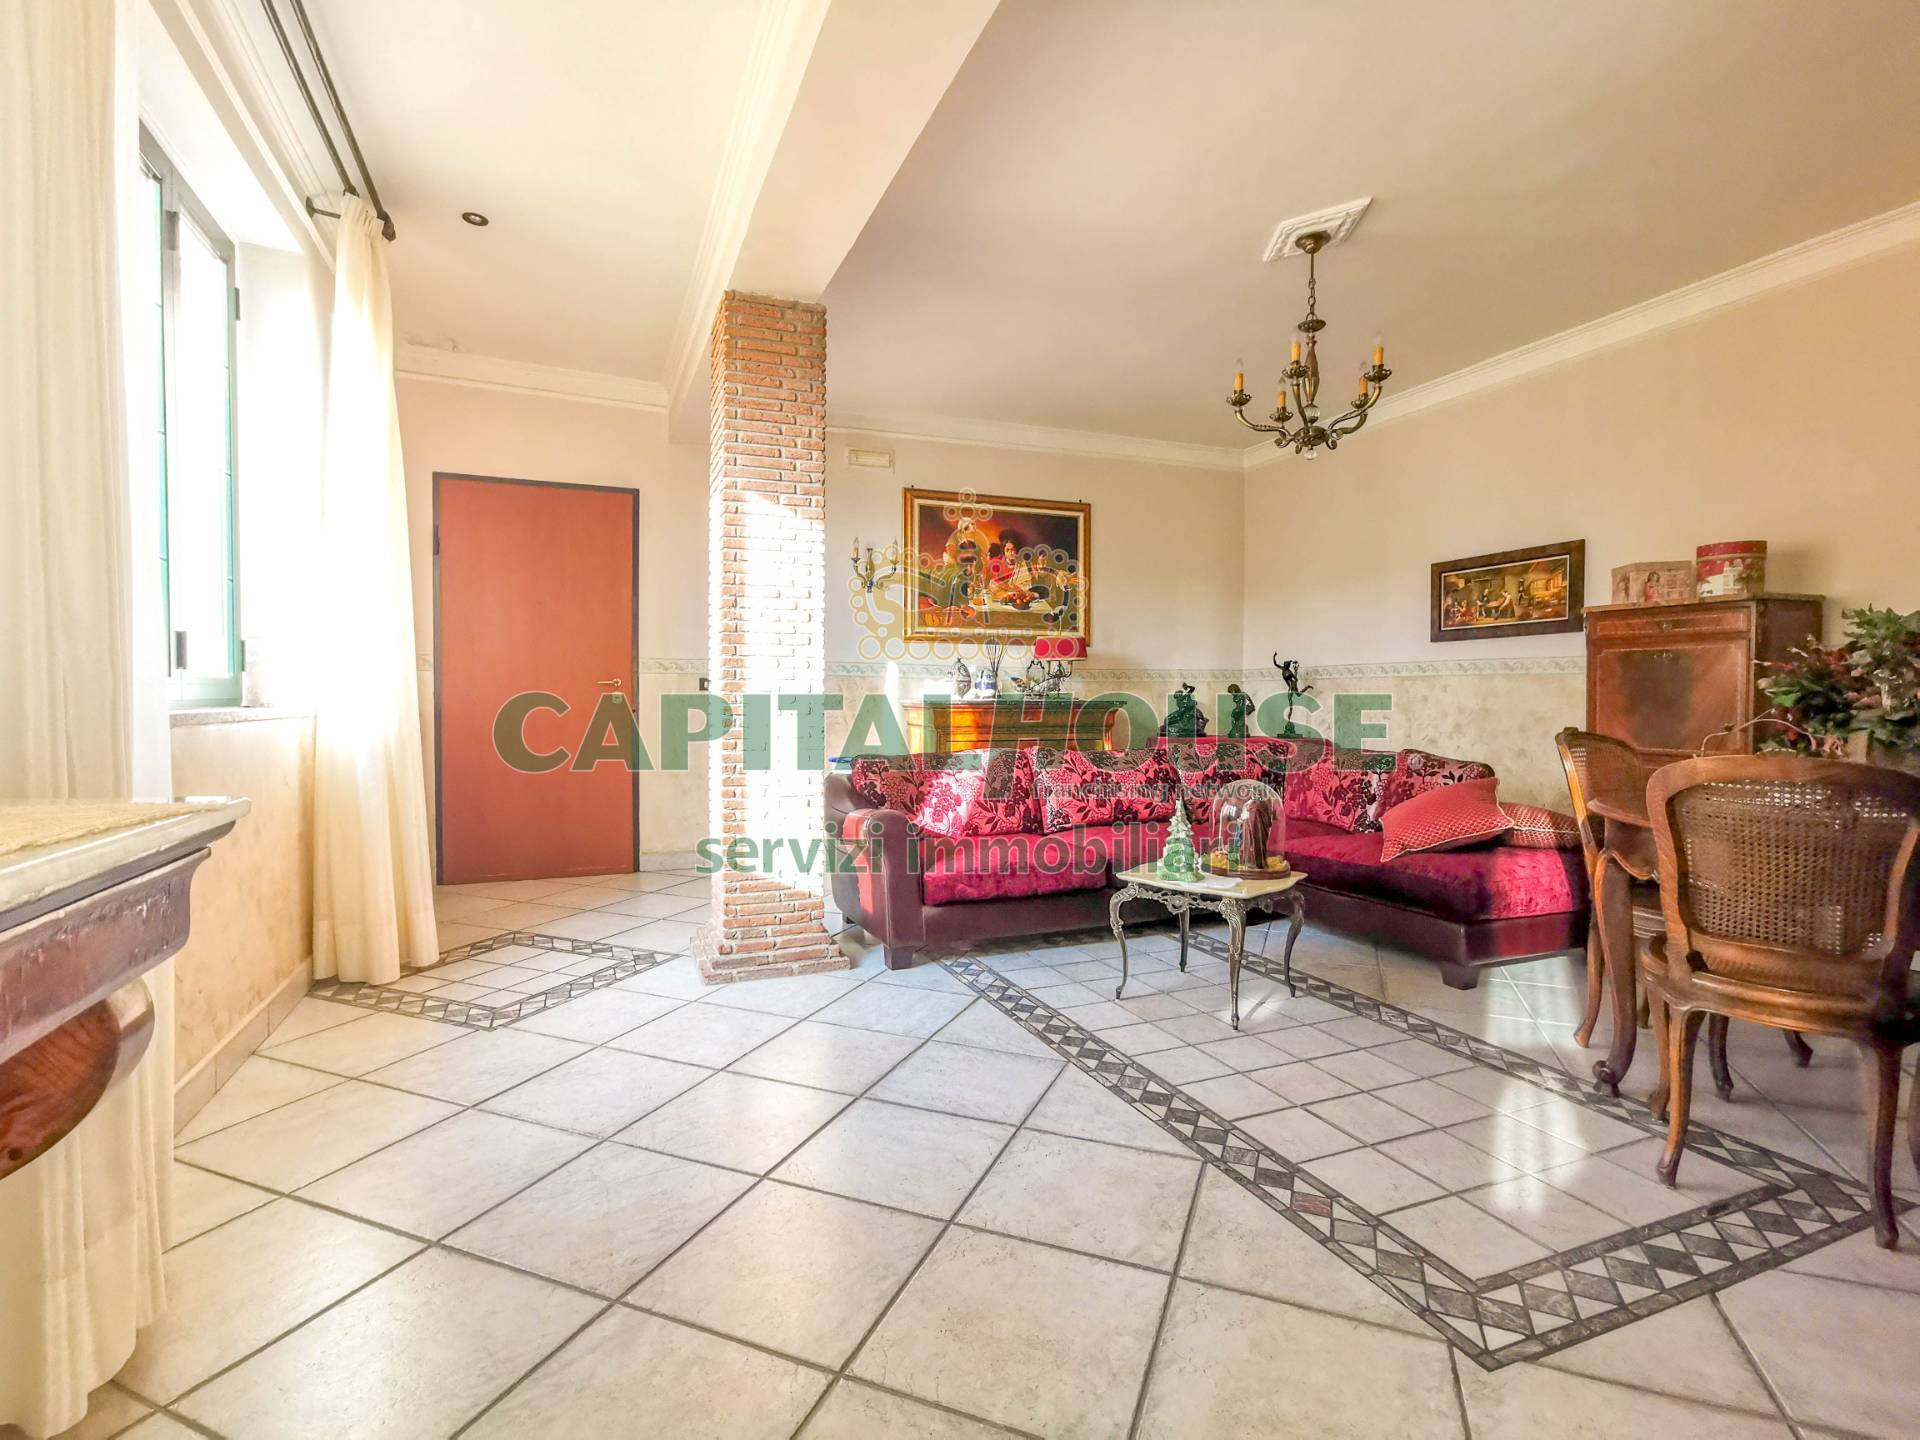 Appartamento in vendita a Casapulla, 5 locali, prezzo € 149.000 | PortaleAgenzieImmobiliari.it